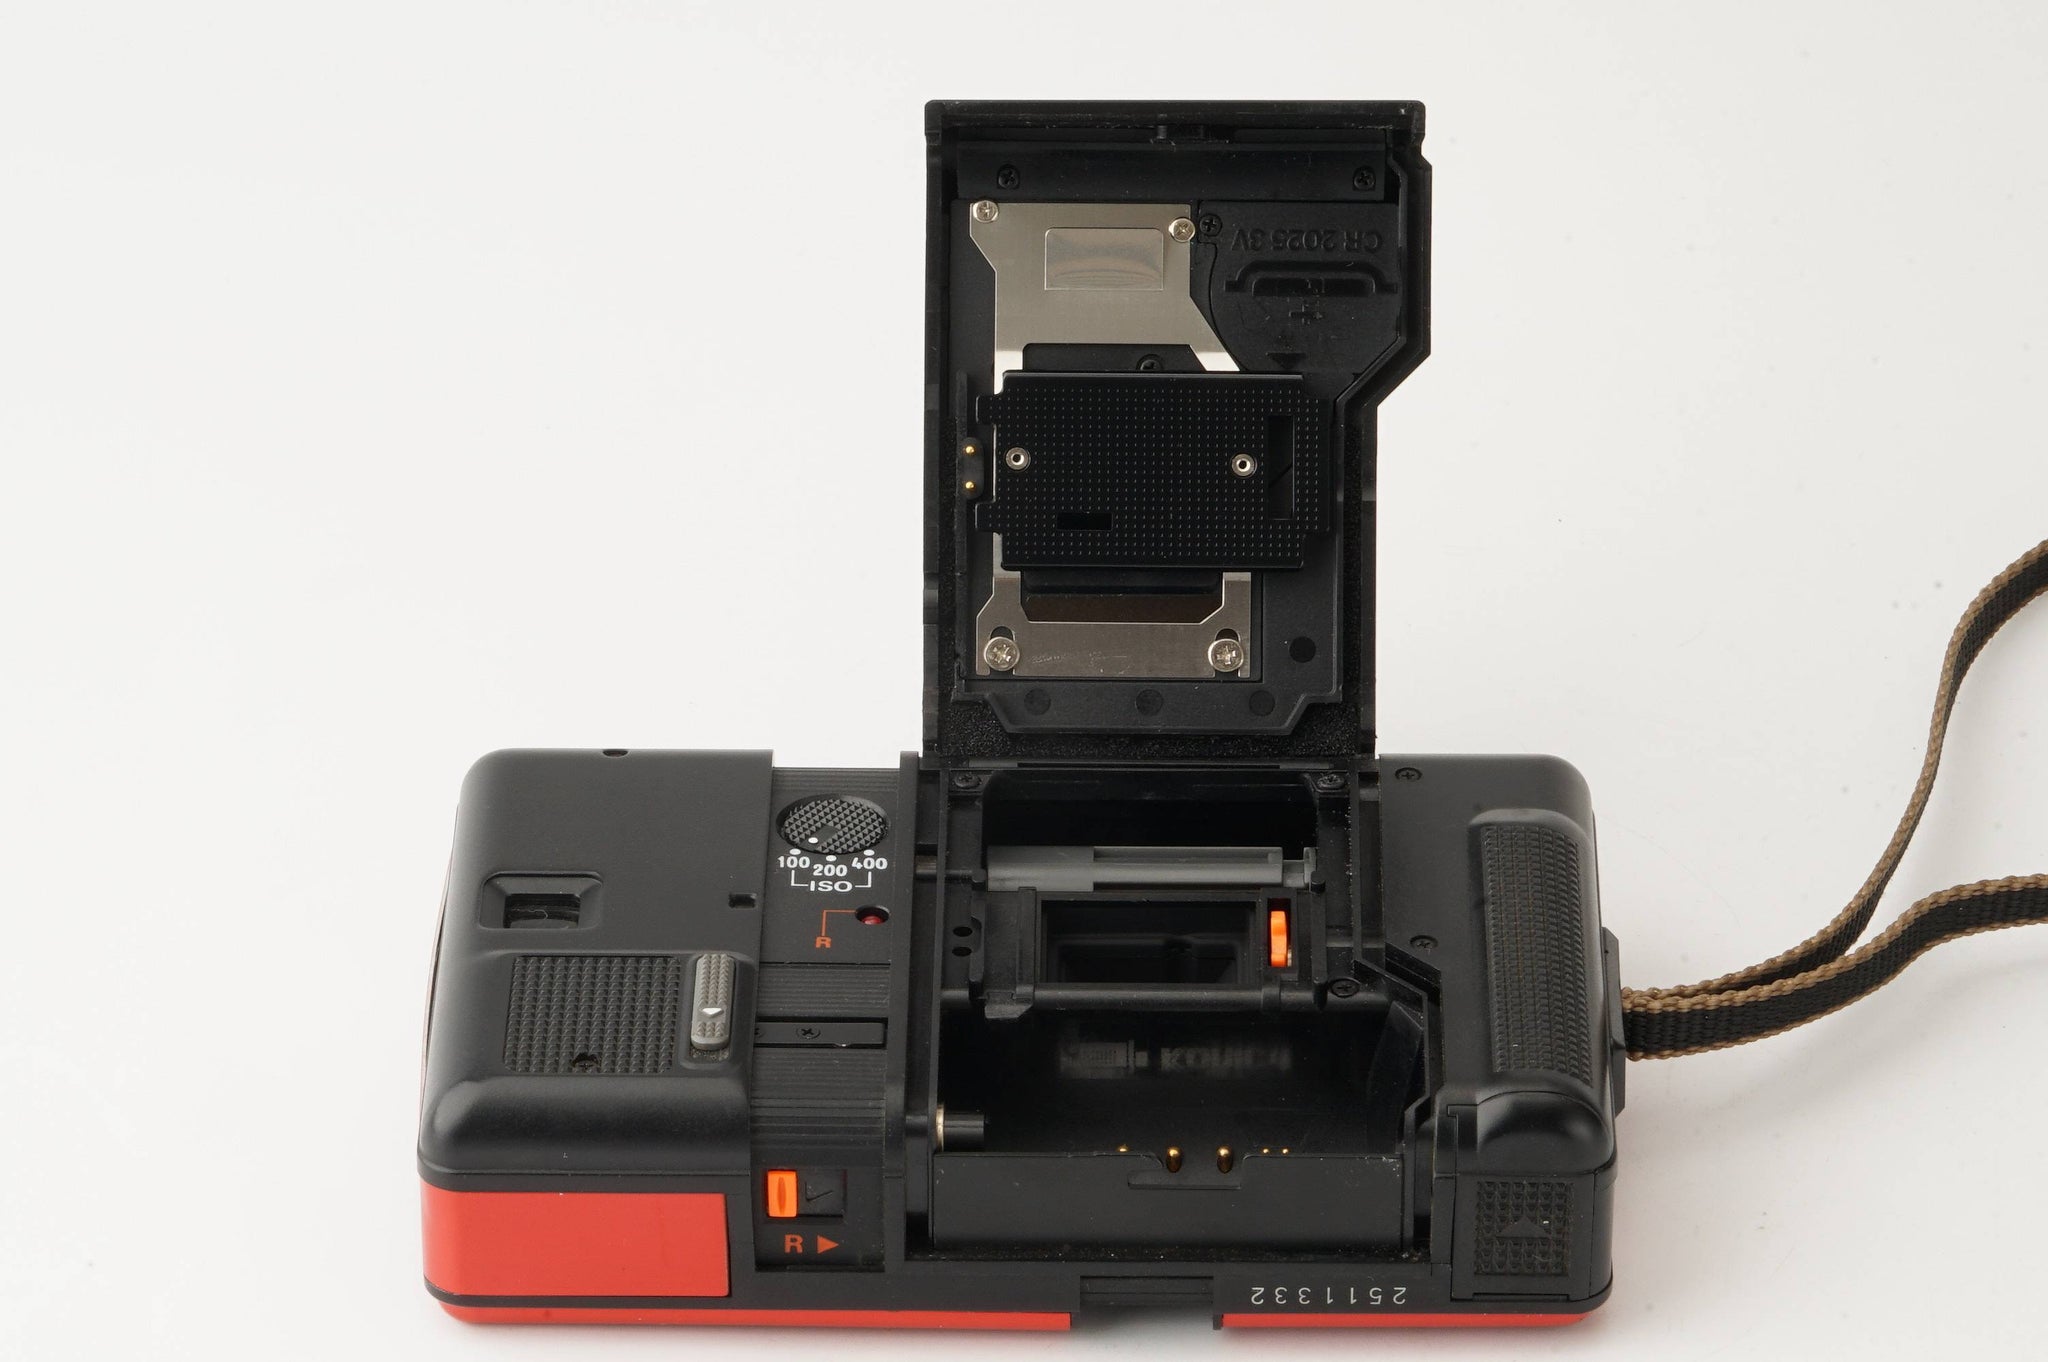 コニカ Konica Auto Focus レコーダー Recorder DX Auto Date レッド/ Hexanon 24mm F4 –  Natural Camera / ナチュラルカメラ